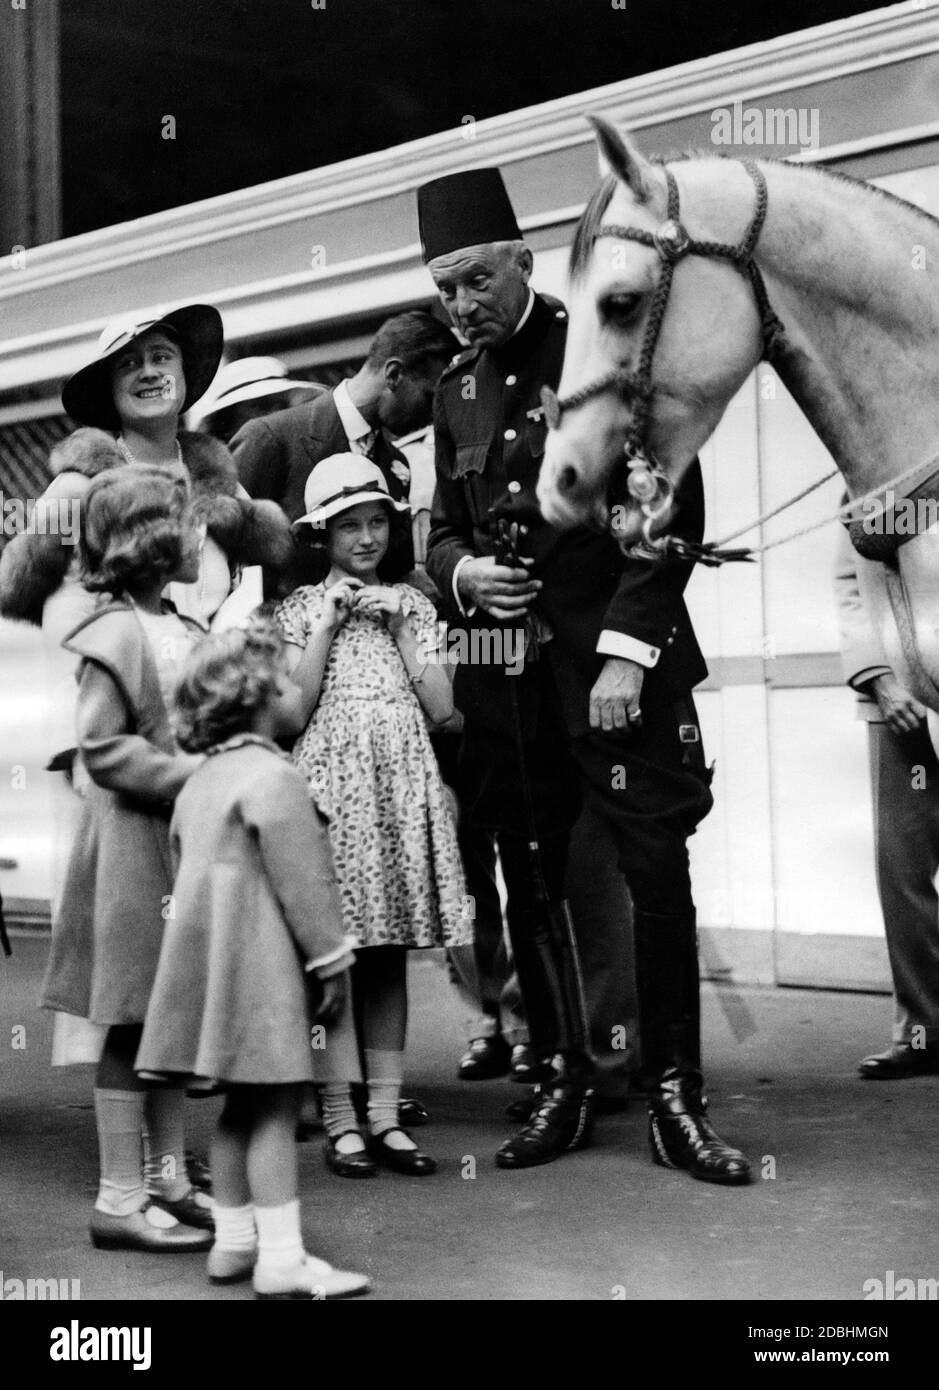 Elizabeth, Duchesse de York, la princesse Margaret Rose, la princesse Elizabeth et George VI, duc de York, visitent le salon international du cheval à Olympia. Banque D'Images